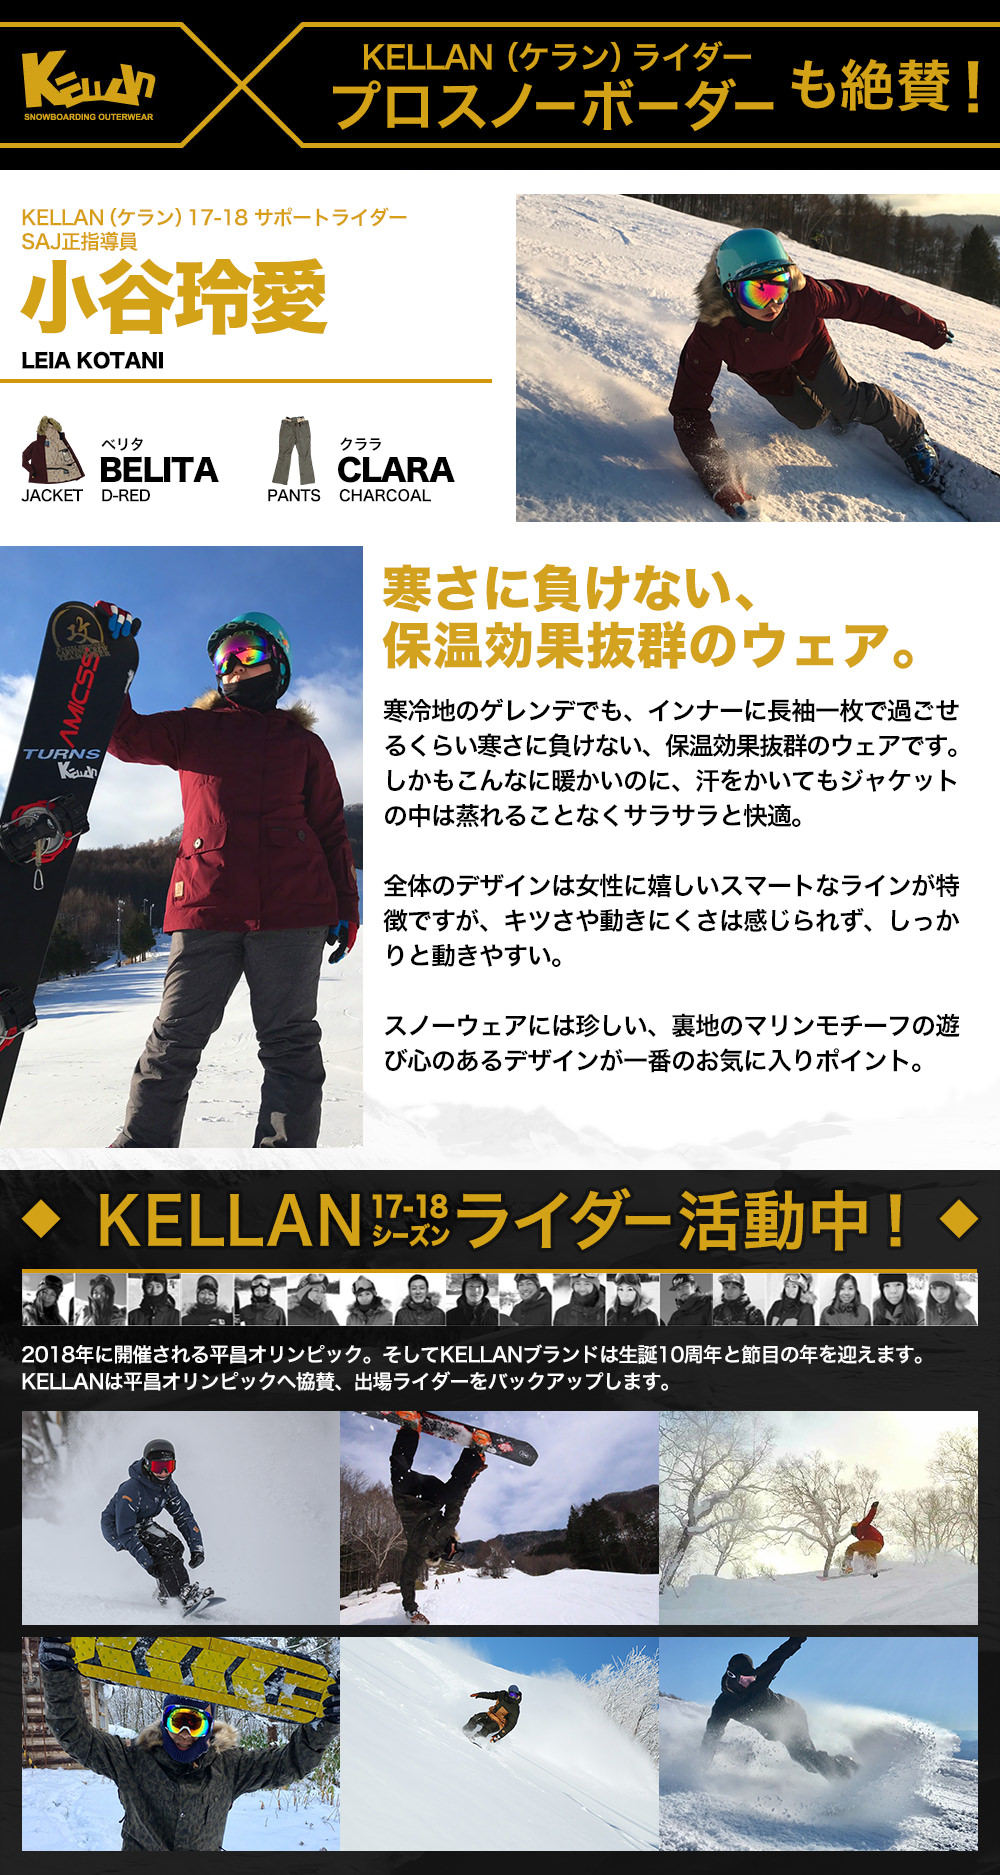 ベストスポーツ スノボ ウェア レディース ケラン べリタジャケット スノーボードウェア スキーウェア 大きいサイズ 耐水圧 KELLAN belita JKT 10104